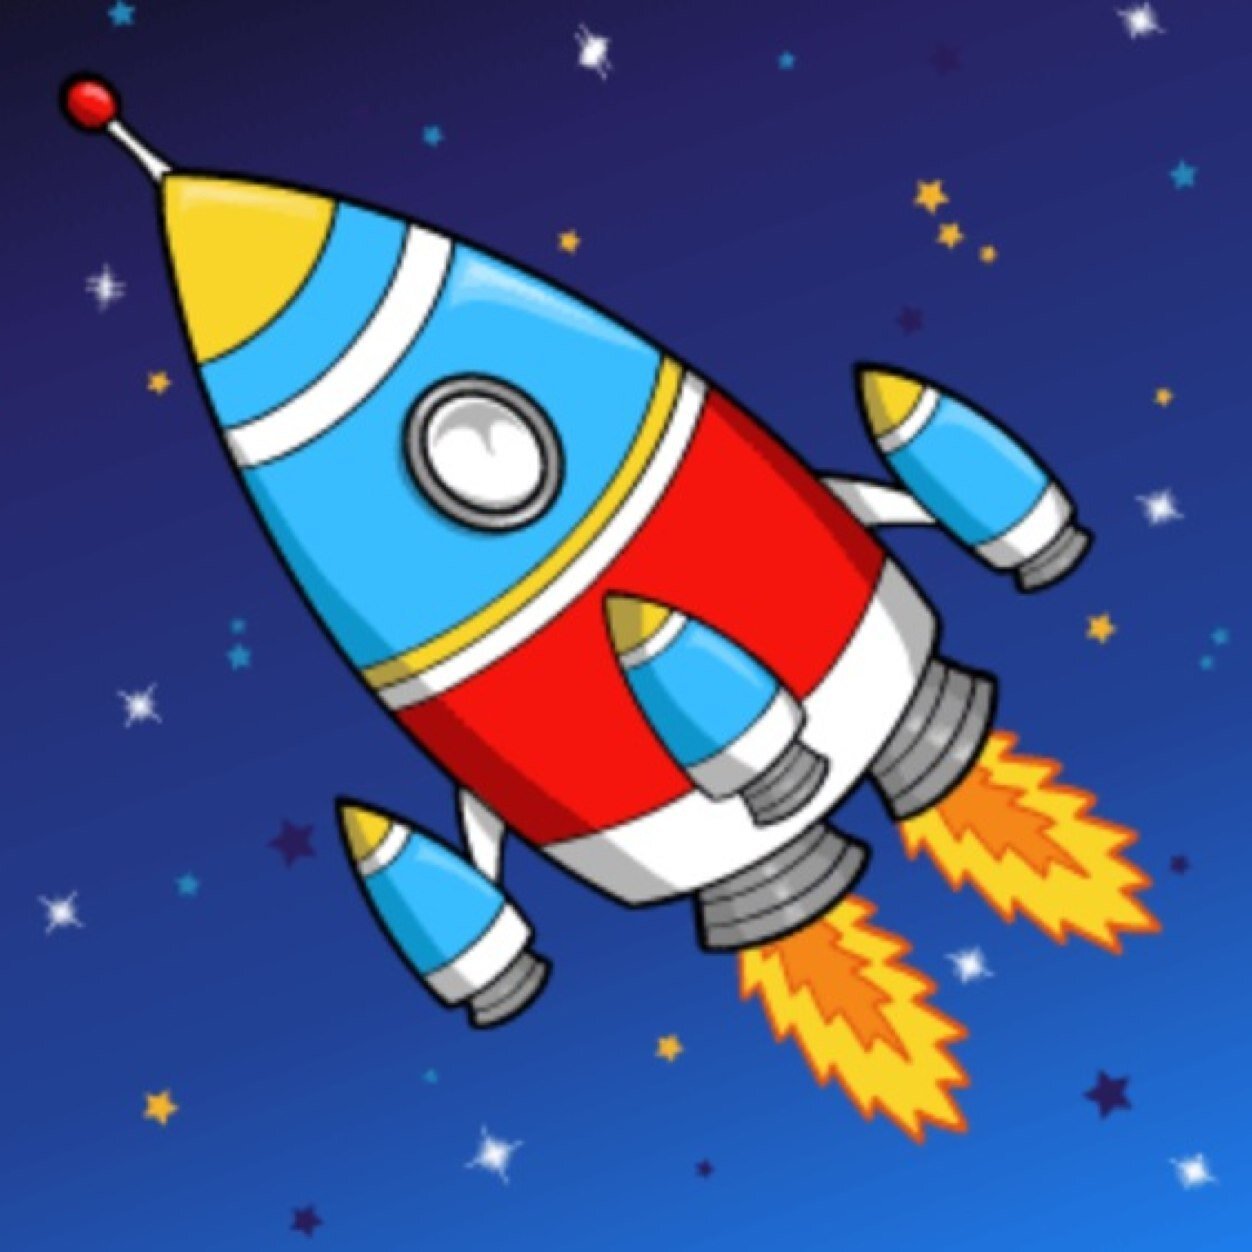 Картинки ракеты для детей дошкольного возраста. Ракета для детей. Космическая ракета для детей. Детям о космосе. Ракета рисунок.